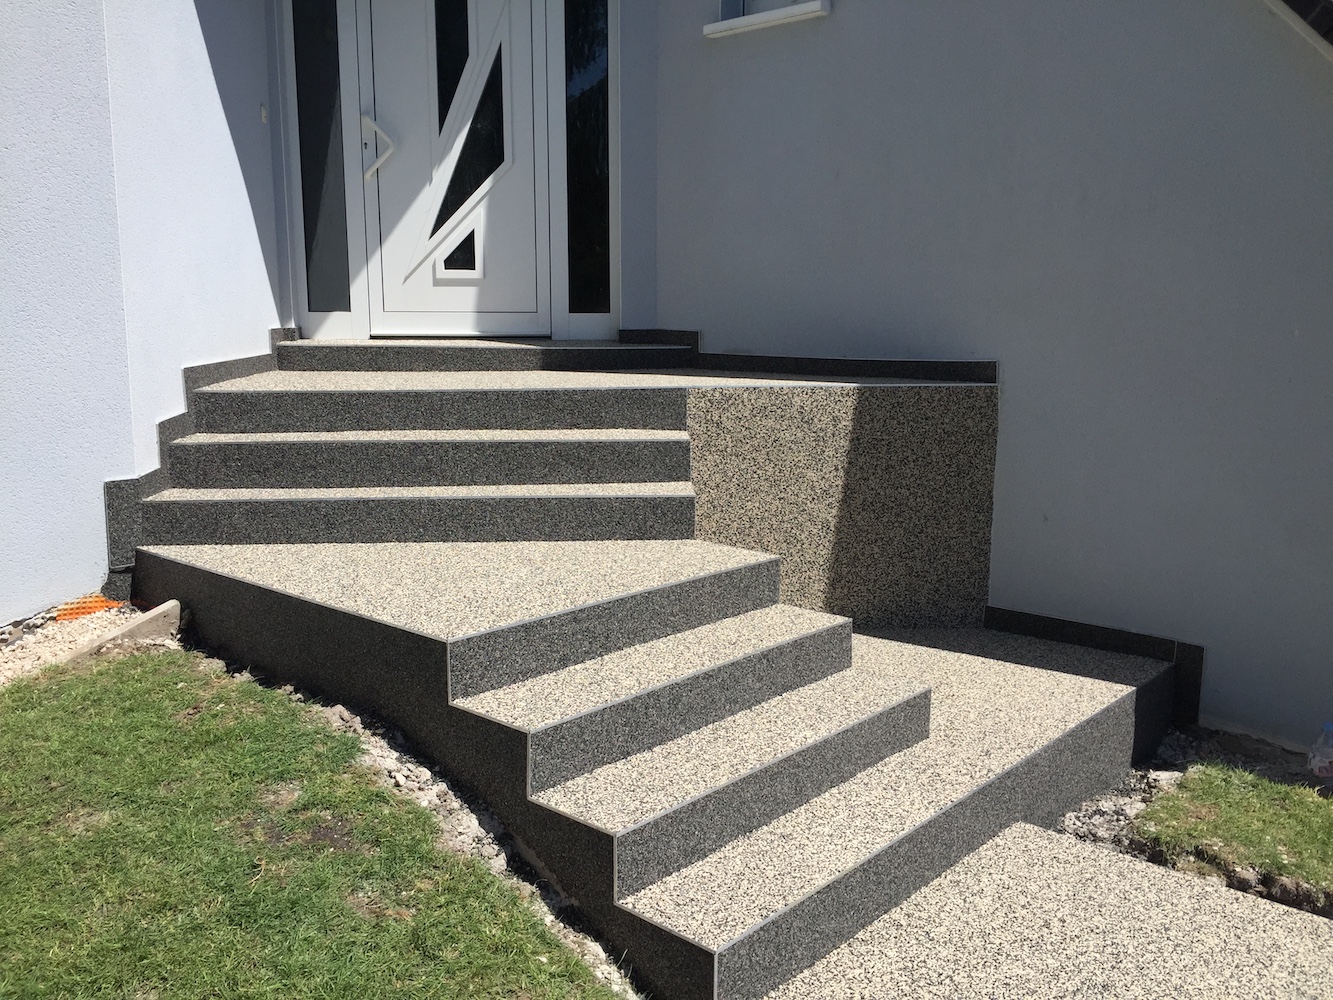 Des escaliers extérieurs en moquette de pierre pour un projet de rénovation extérieure